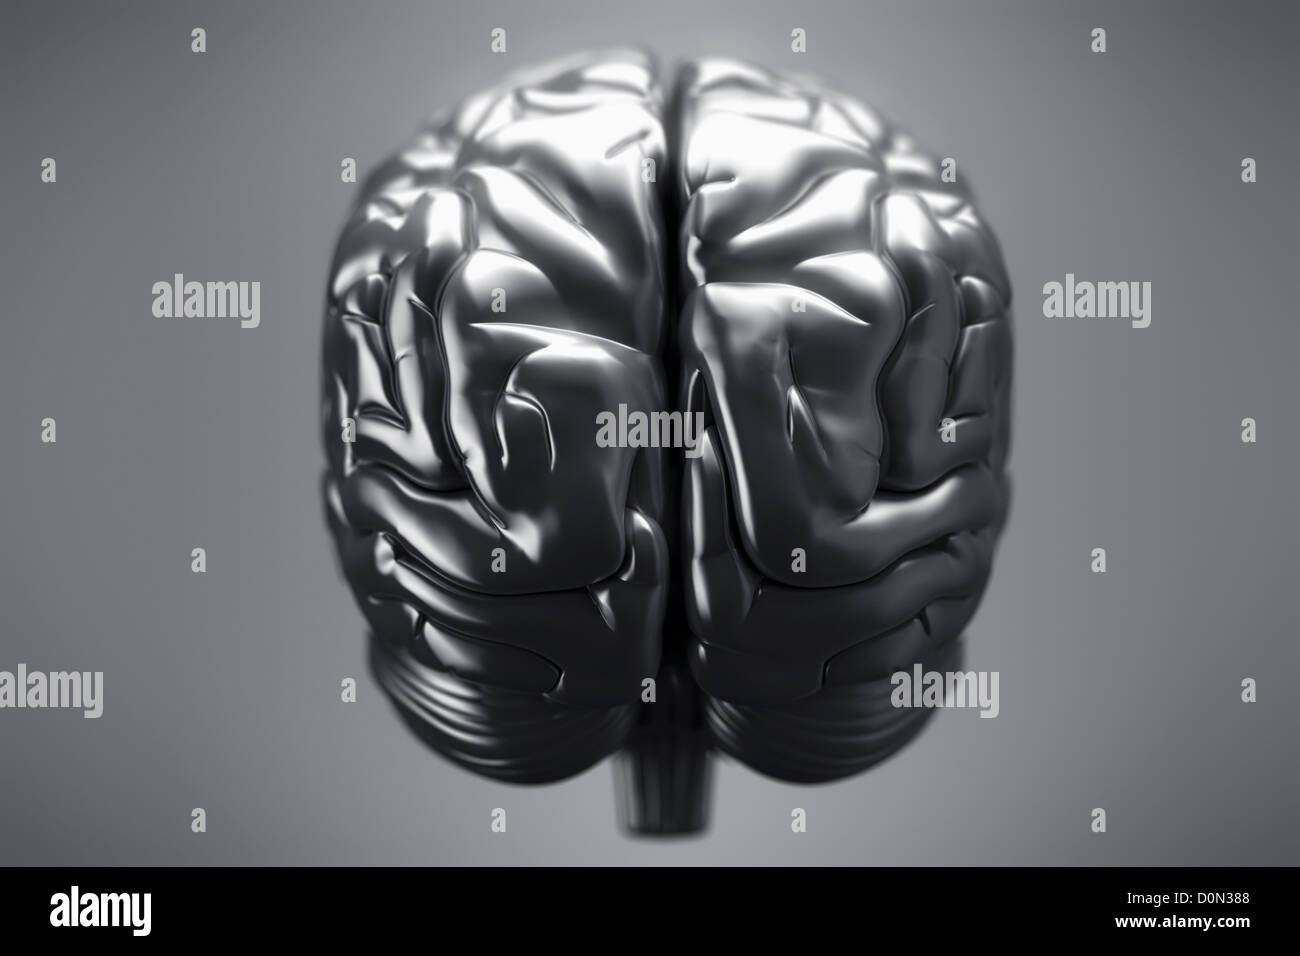 Una vista posteriore di un cervello metallico. Gli emisferi cerebrali, cervelletto e tronco cerebrale sono visibili. Foto Stock